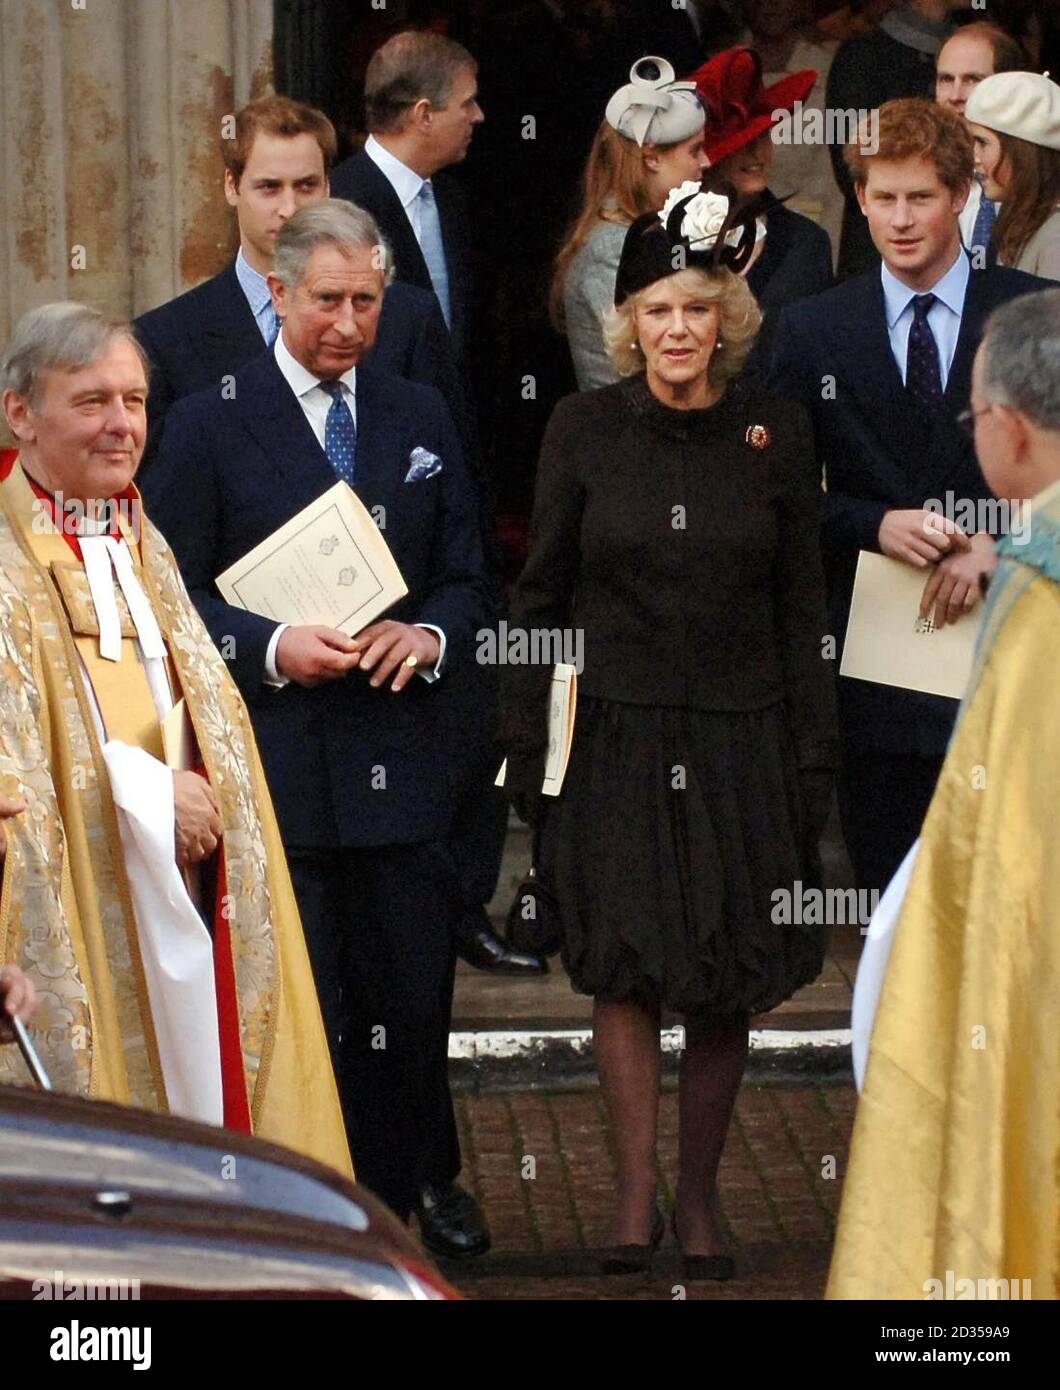 Le prince de Galles, la duchesse de Cornouailles et les princes William et Harry quittent l'abbaye de Westminster, à Londres, après un service de célébration pour marquer l'anniversaire du mariage du diamant de la reine Elizabeth II et du duc d'Édimbourg. Banque D'Images